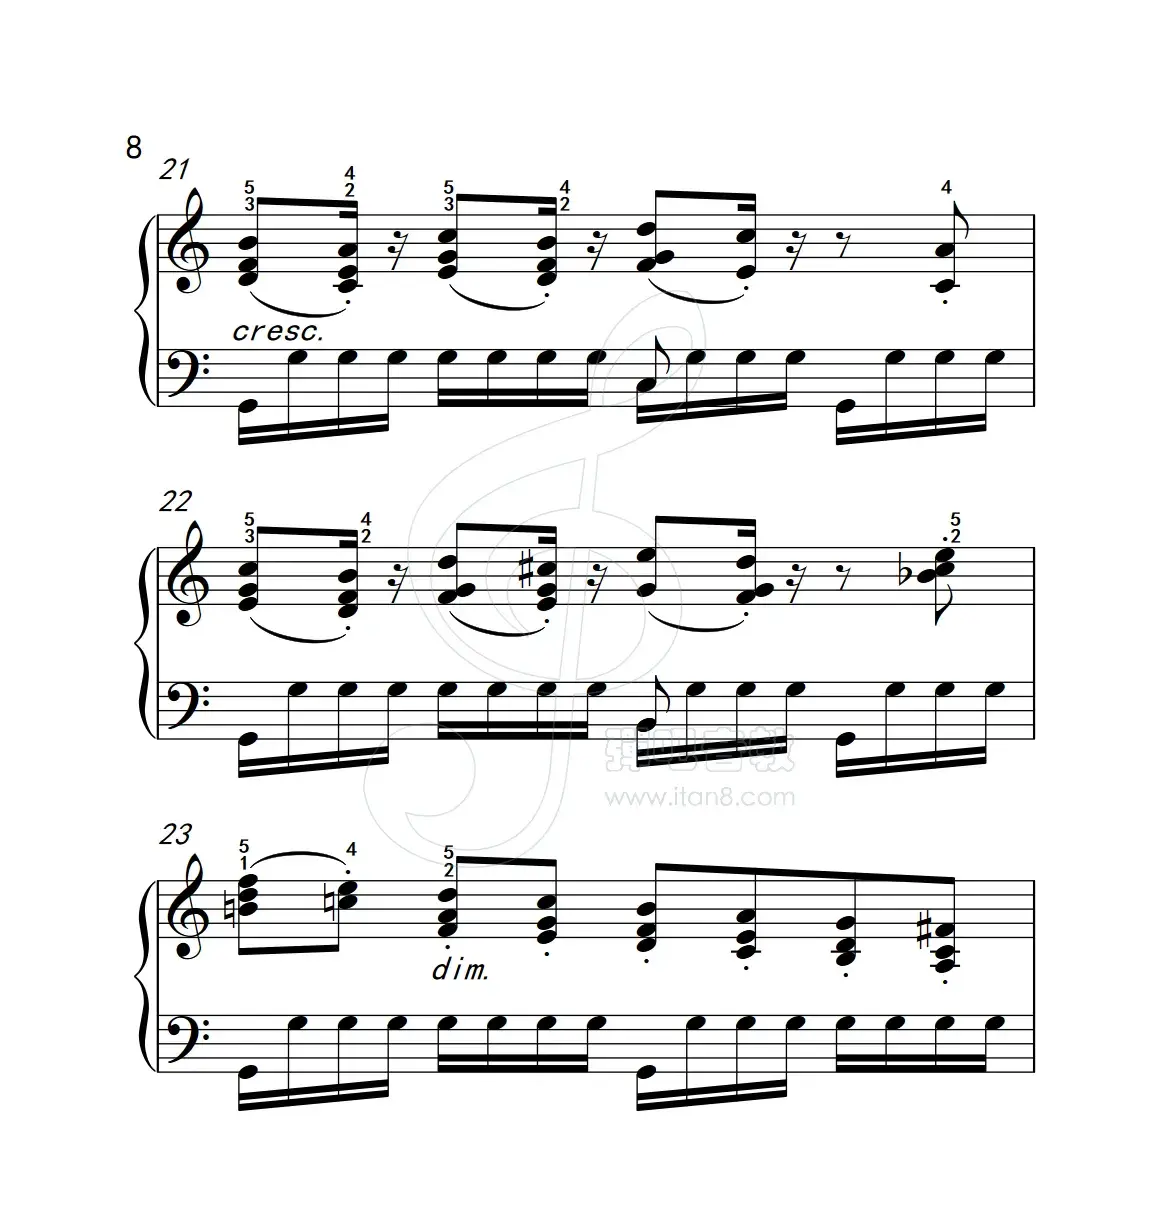 练习曲 12（克拉莫钢琴练习曲60首）